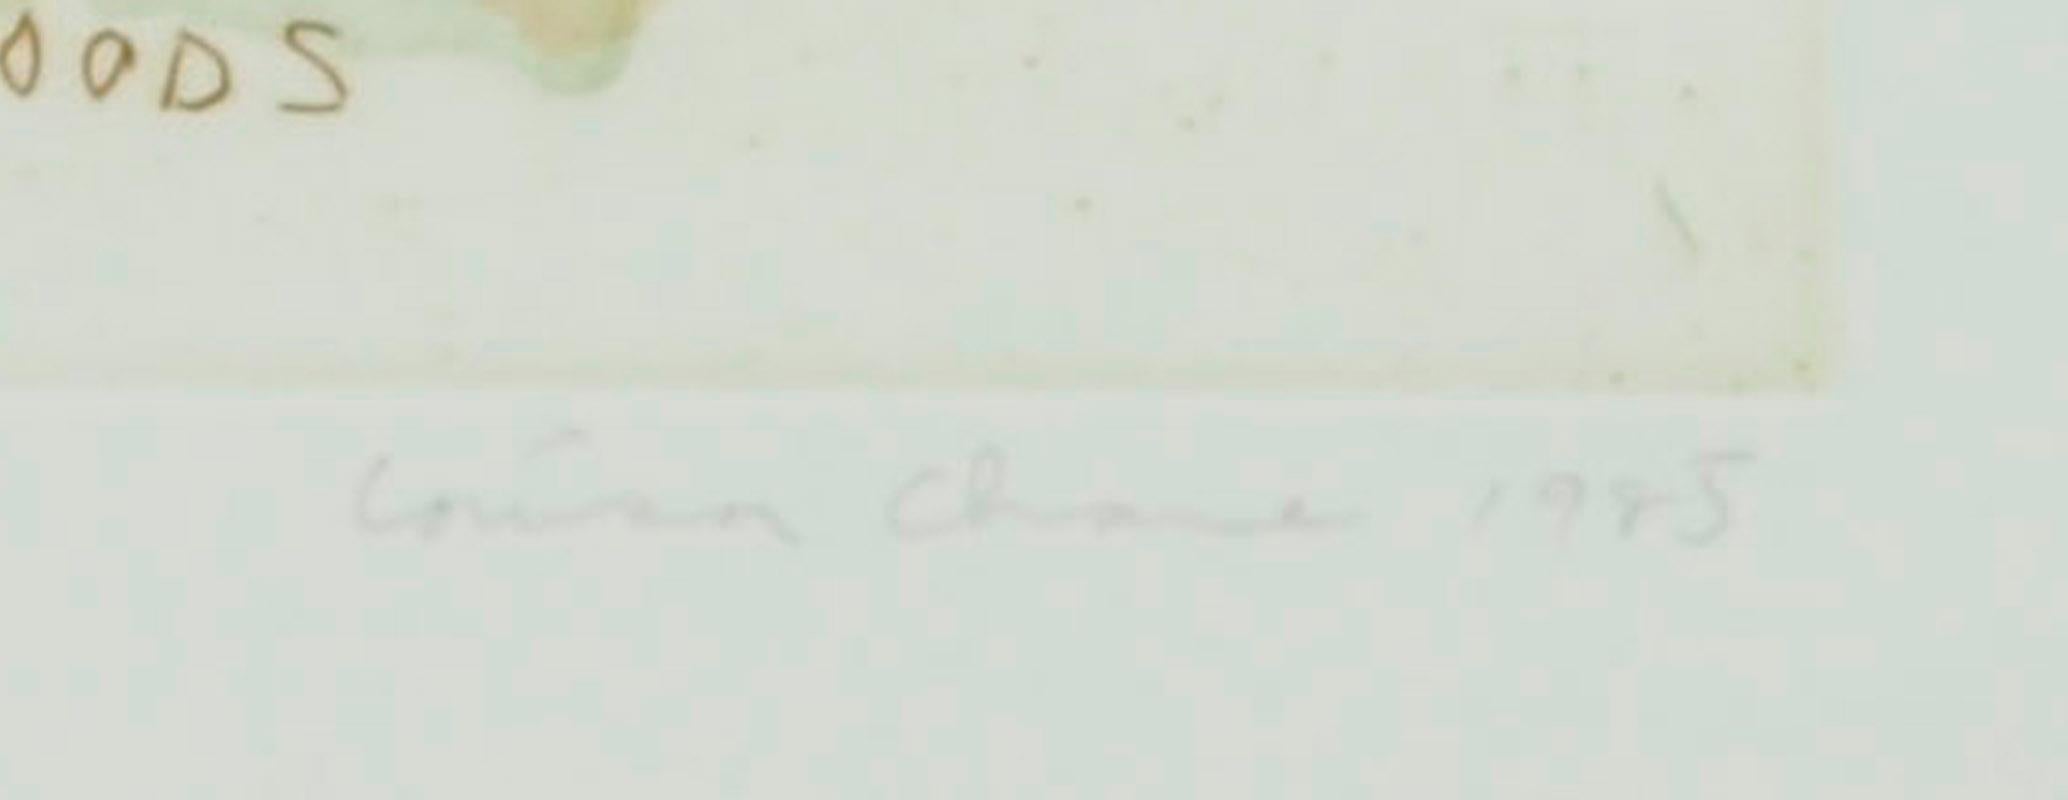 Wälder
Radierung und Aquatinta in Farben gedruckt, 1985
Signiert, betitelt und nummeriert mit Bleistift
Auflage: 15 (12/15)
Gedruckt auf BFK RIVES Papier
Provenienz: GE Art Program, (mit Label), siehe Foto
Zustand: Ausgezeichnet
Bild-/Plattengröße: 